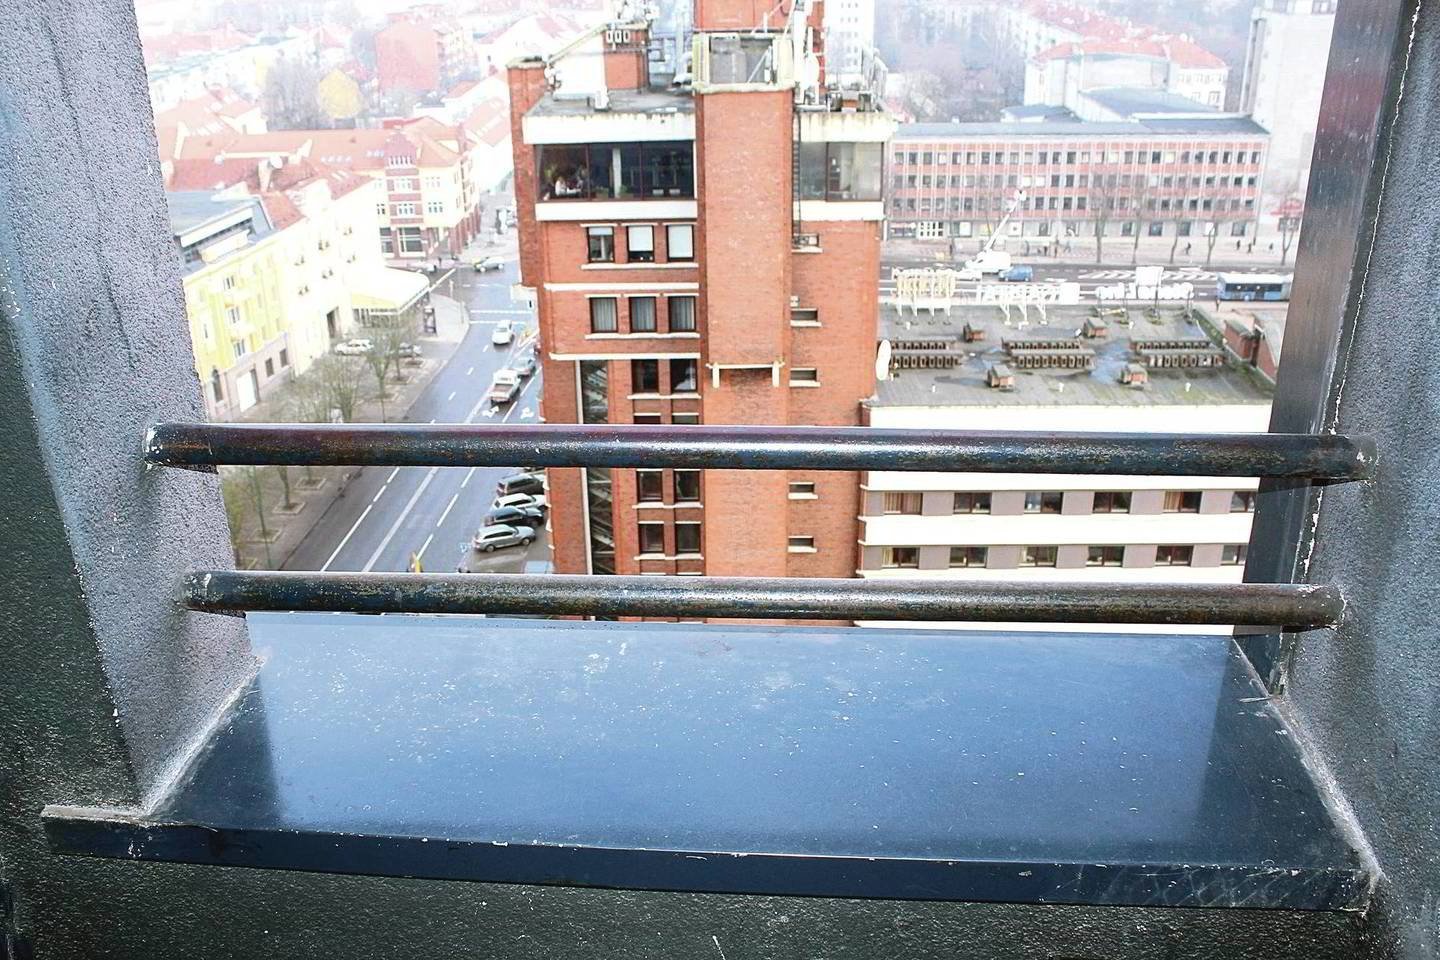  Vis dar neaišku, kodėl iš šio balkono iškrito D.Didžiūnaitytė.